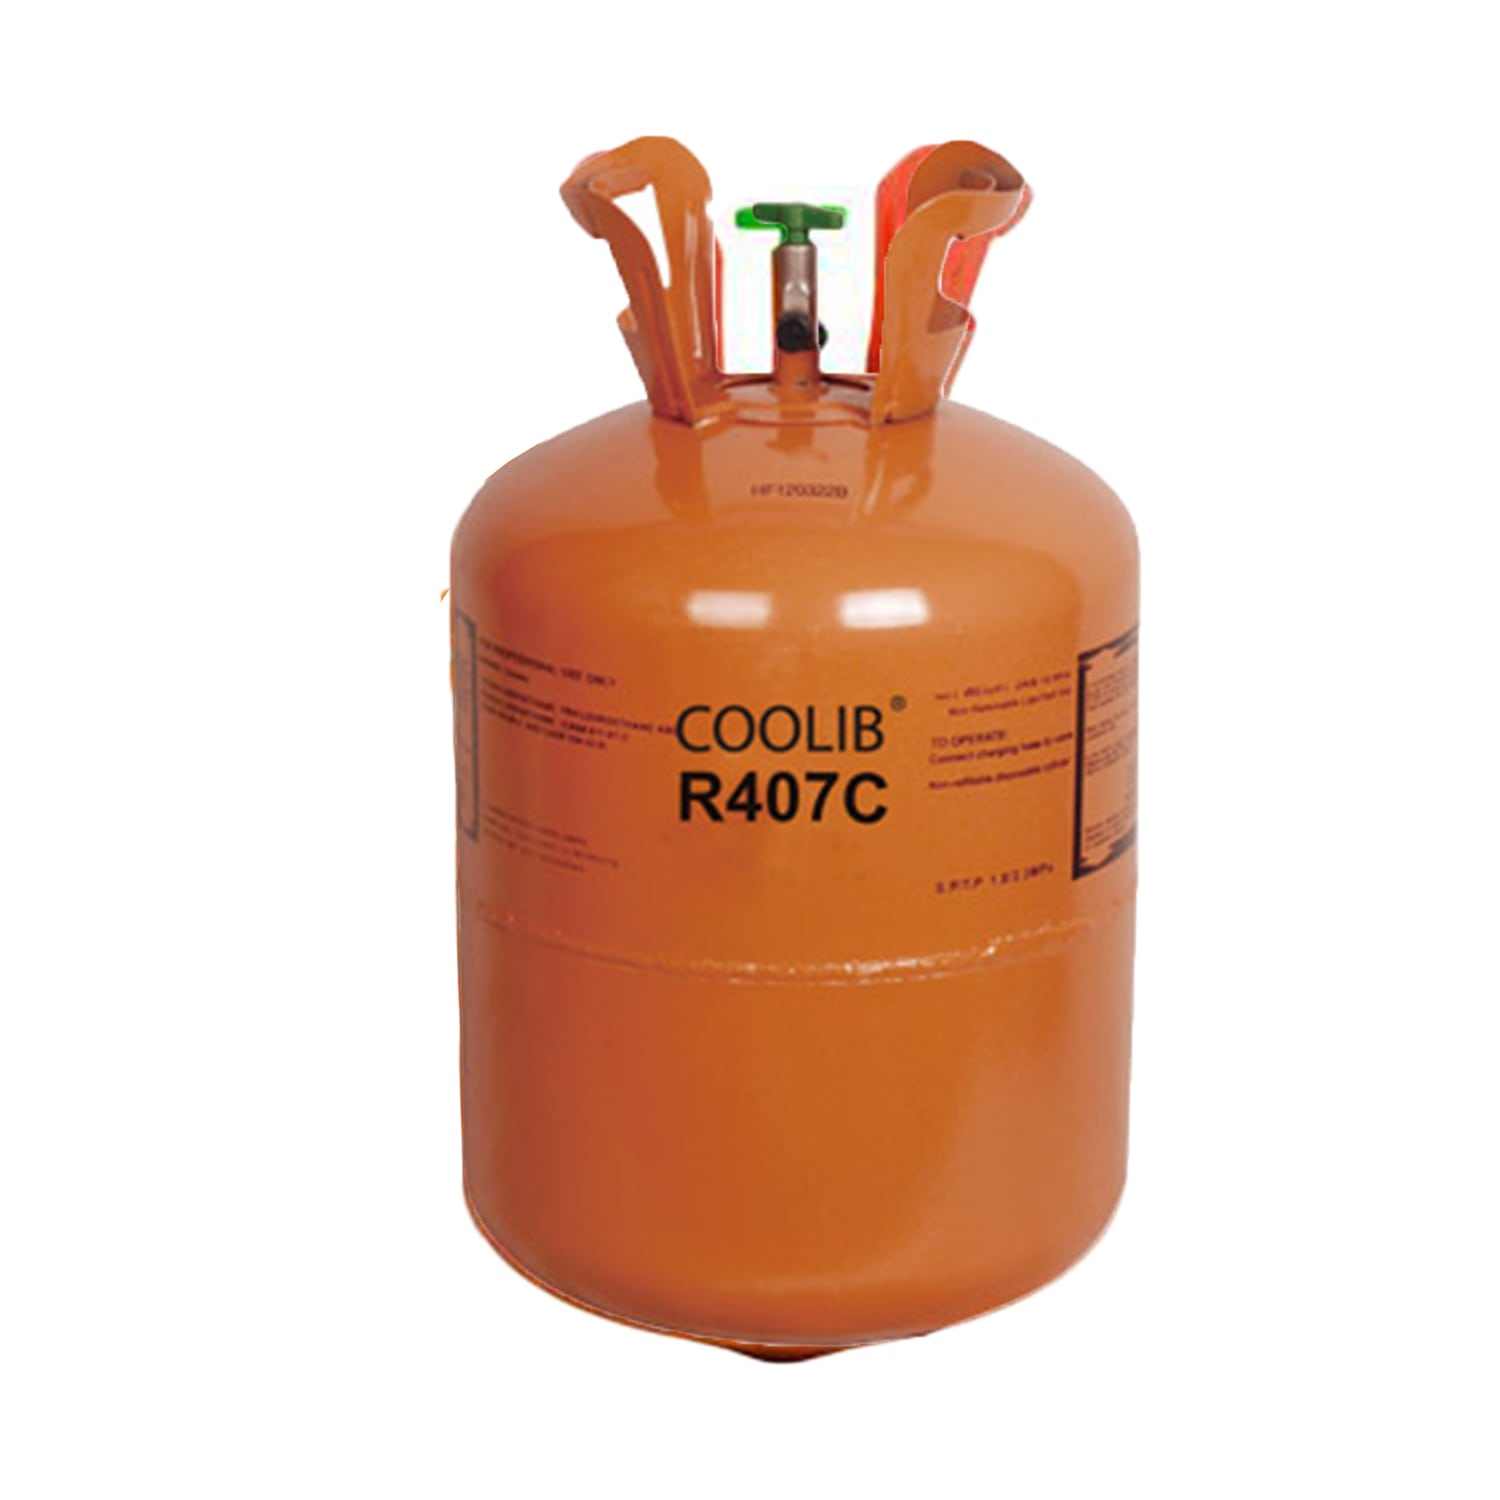 گاز مبرد R407C کولیب (Coolib)